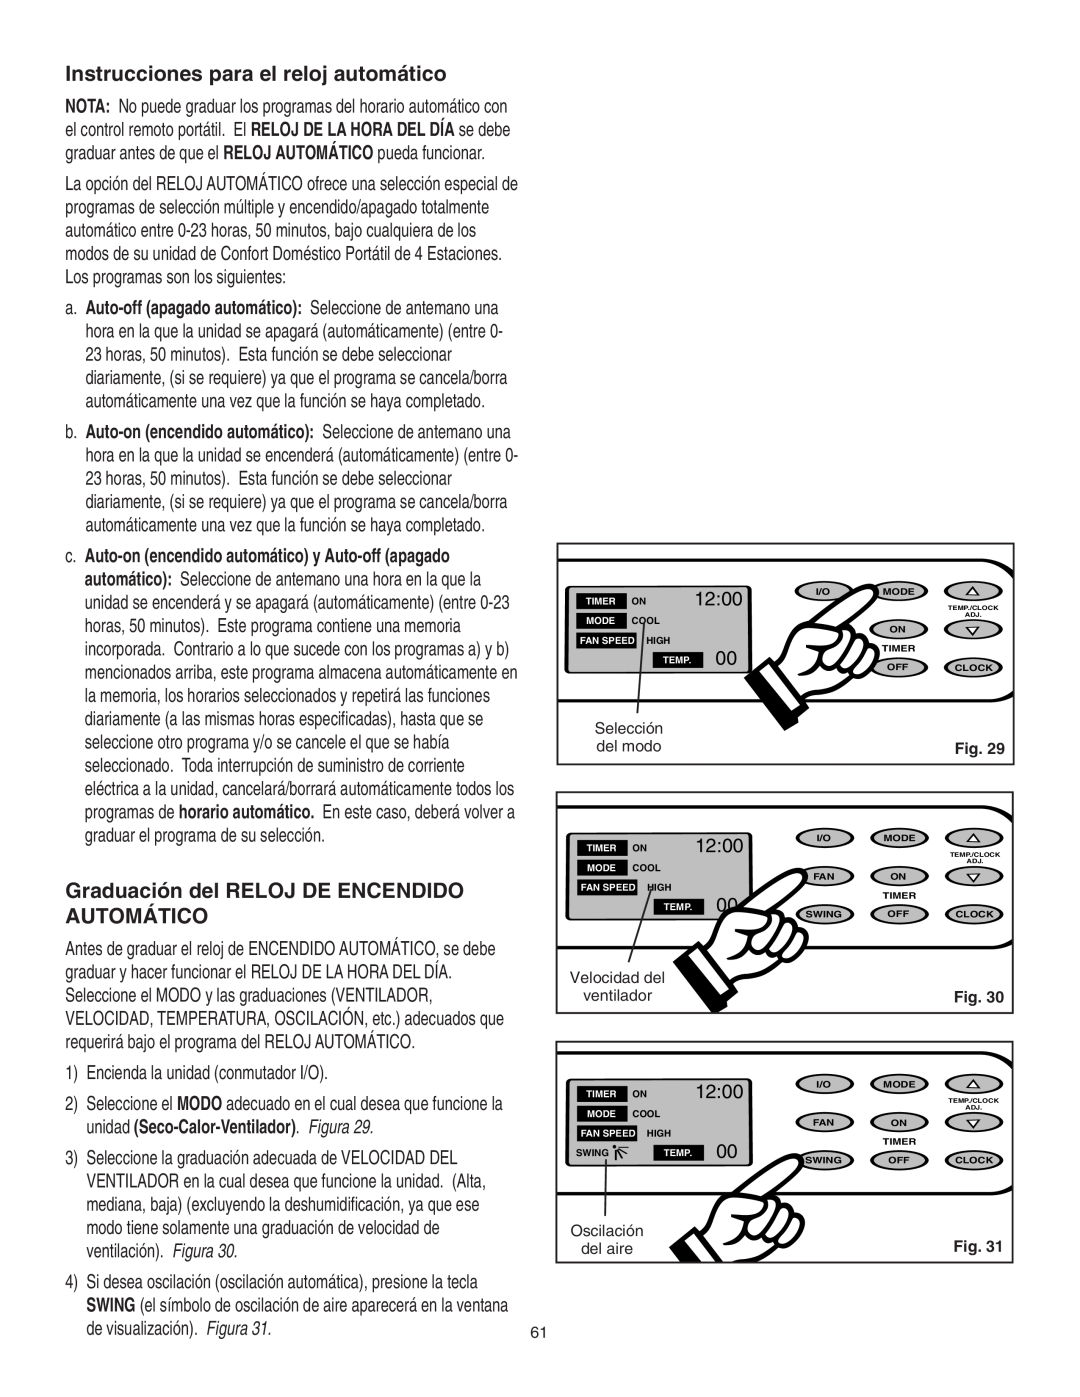 Danby SPAC8499 Instrucciones para el reloj automático, Graduación del RELOJ DE ENCENDIDO AUTOMÁTICO, 12:00, Selección, Fig 